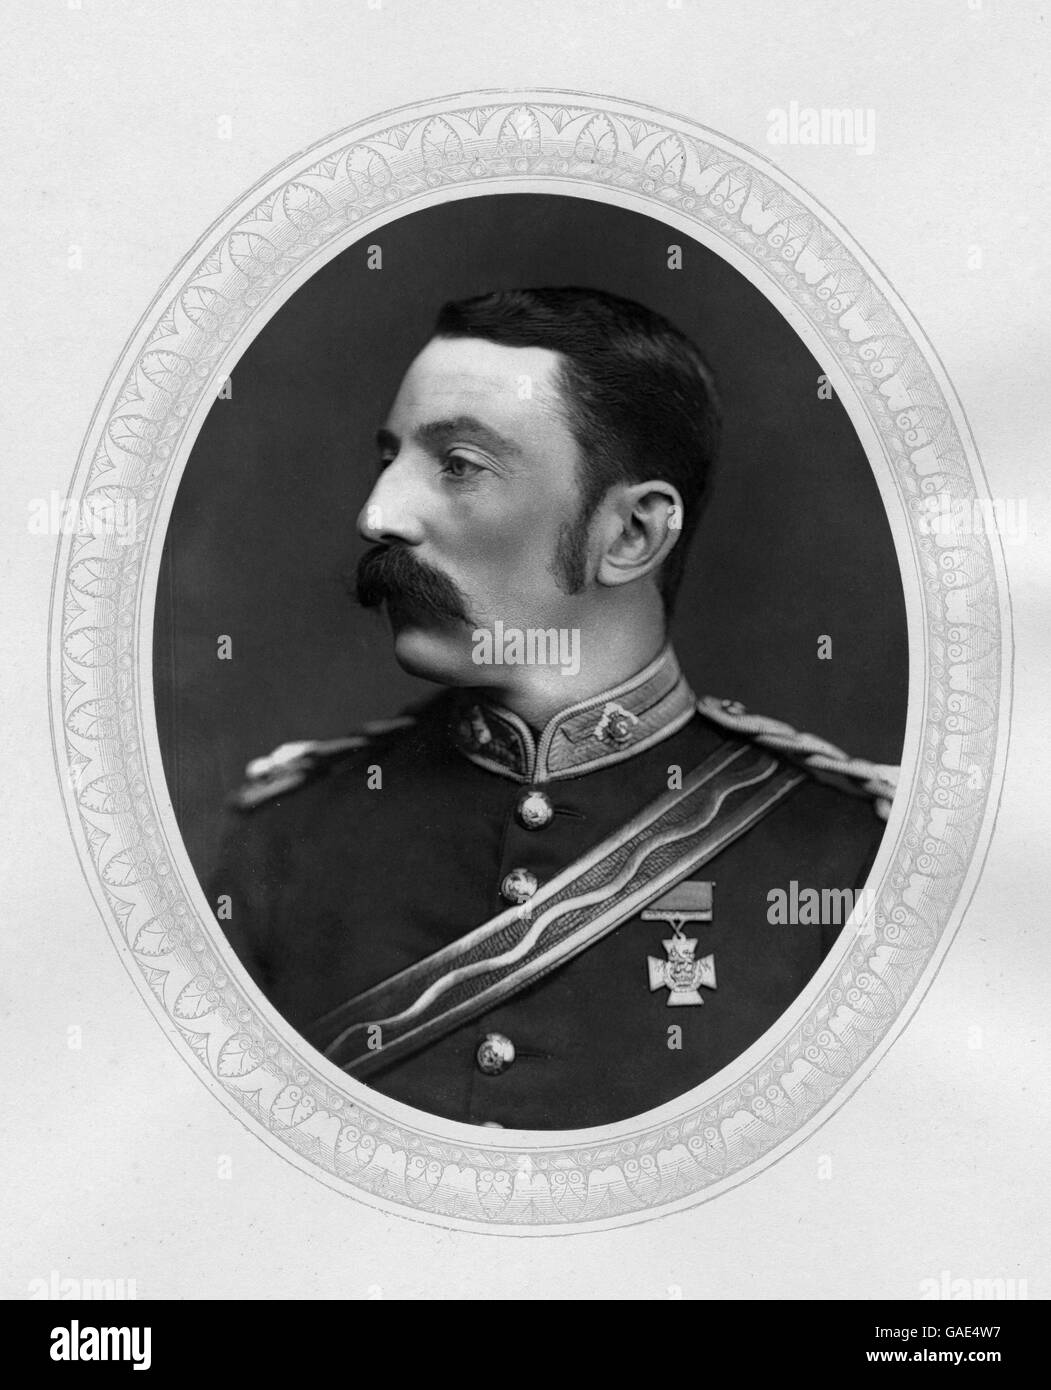 Le major Chard le colonel John Rouse Merriott Chard VC (21 décembre 1847 - 1er novembre 1897) est un soldat anglais qui a remporté la Croix de Victoria pour son rôle dans la défense de la dérive de Rorke en 1879. Banque D'Images